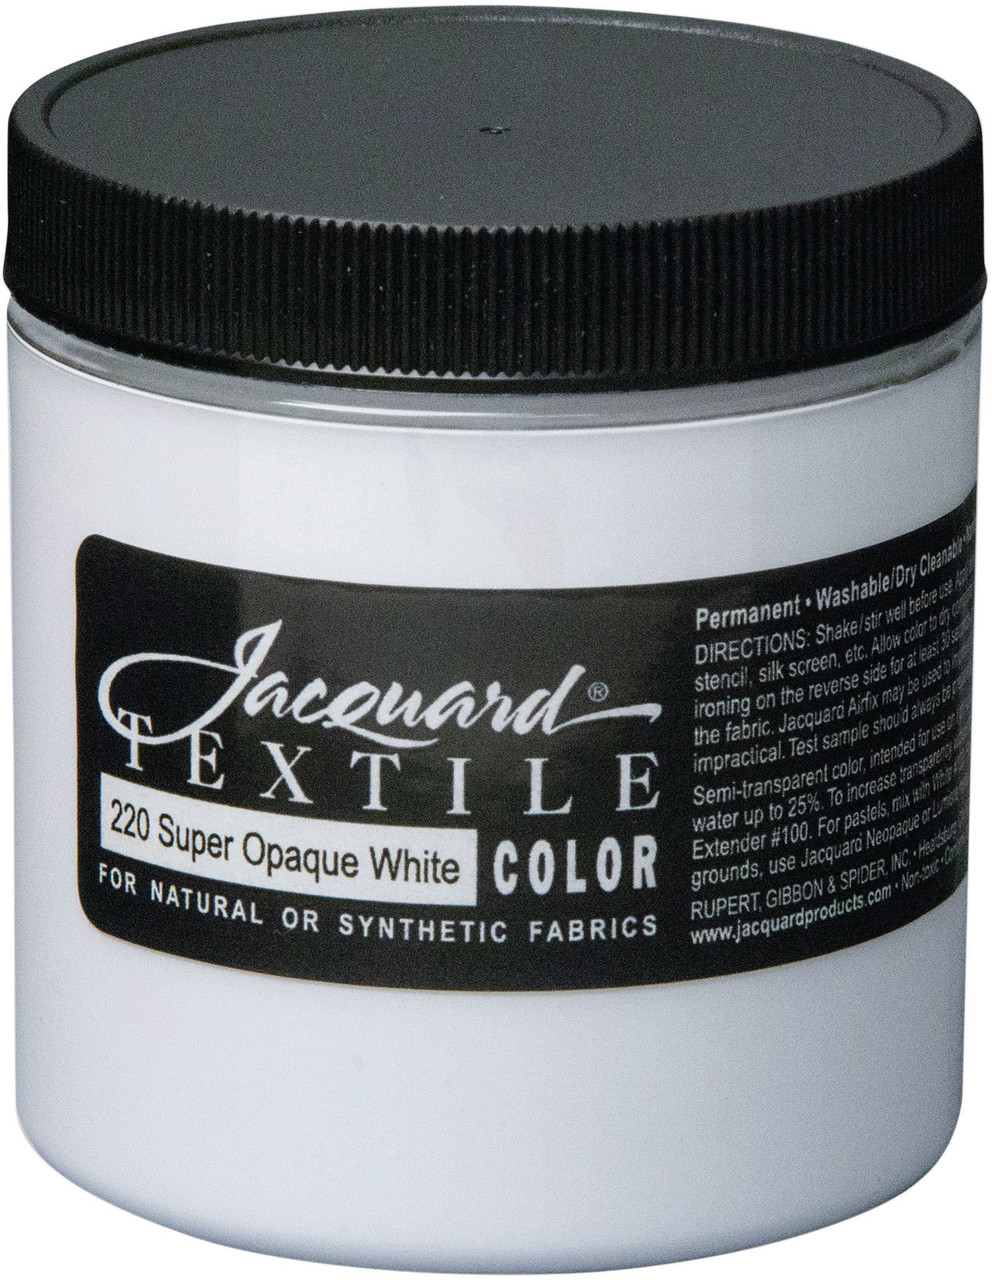 Jacquard Textile Color Fabric Paint 2.25oz White